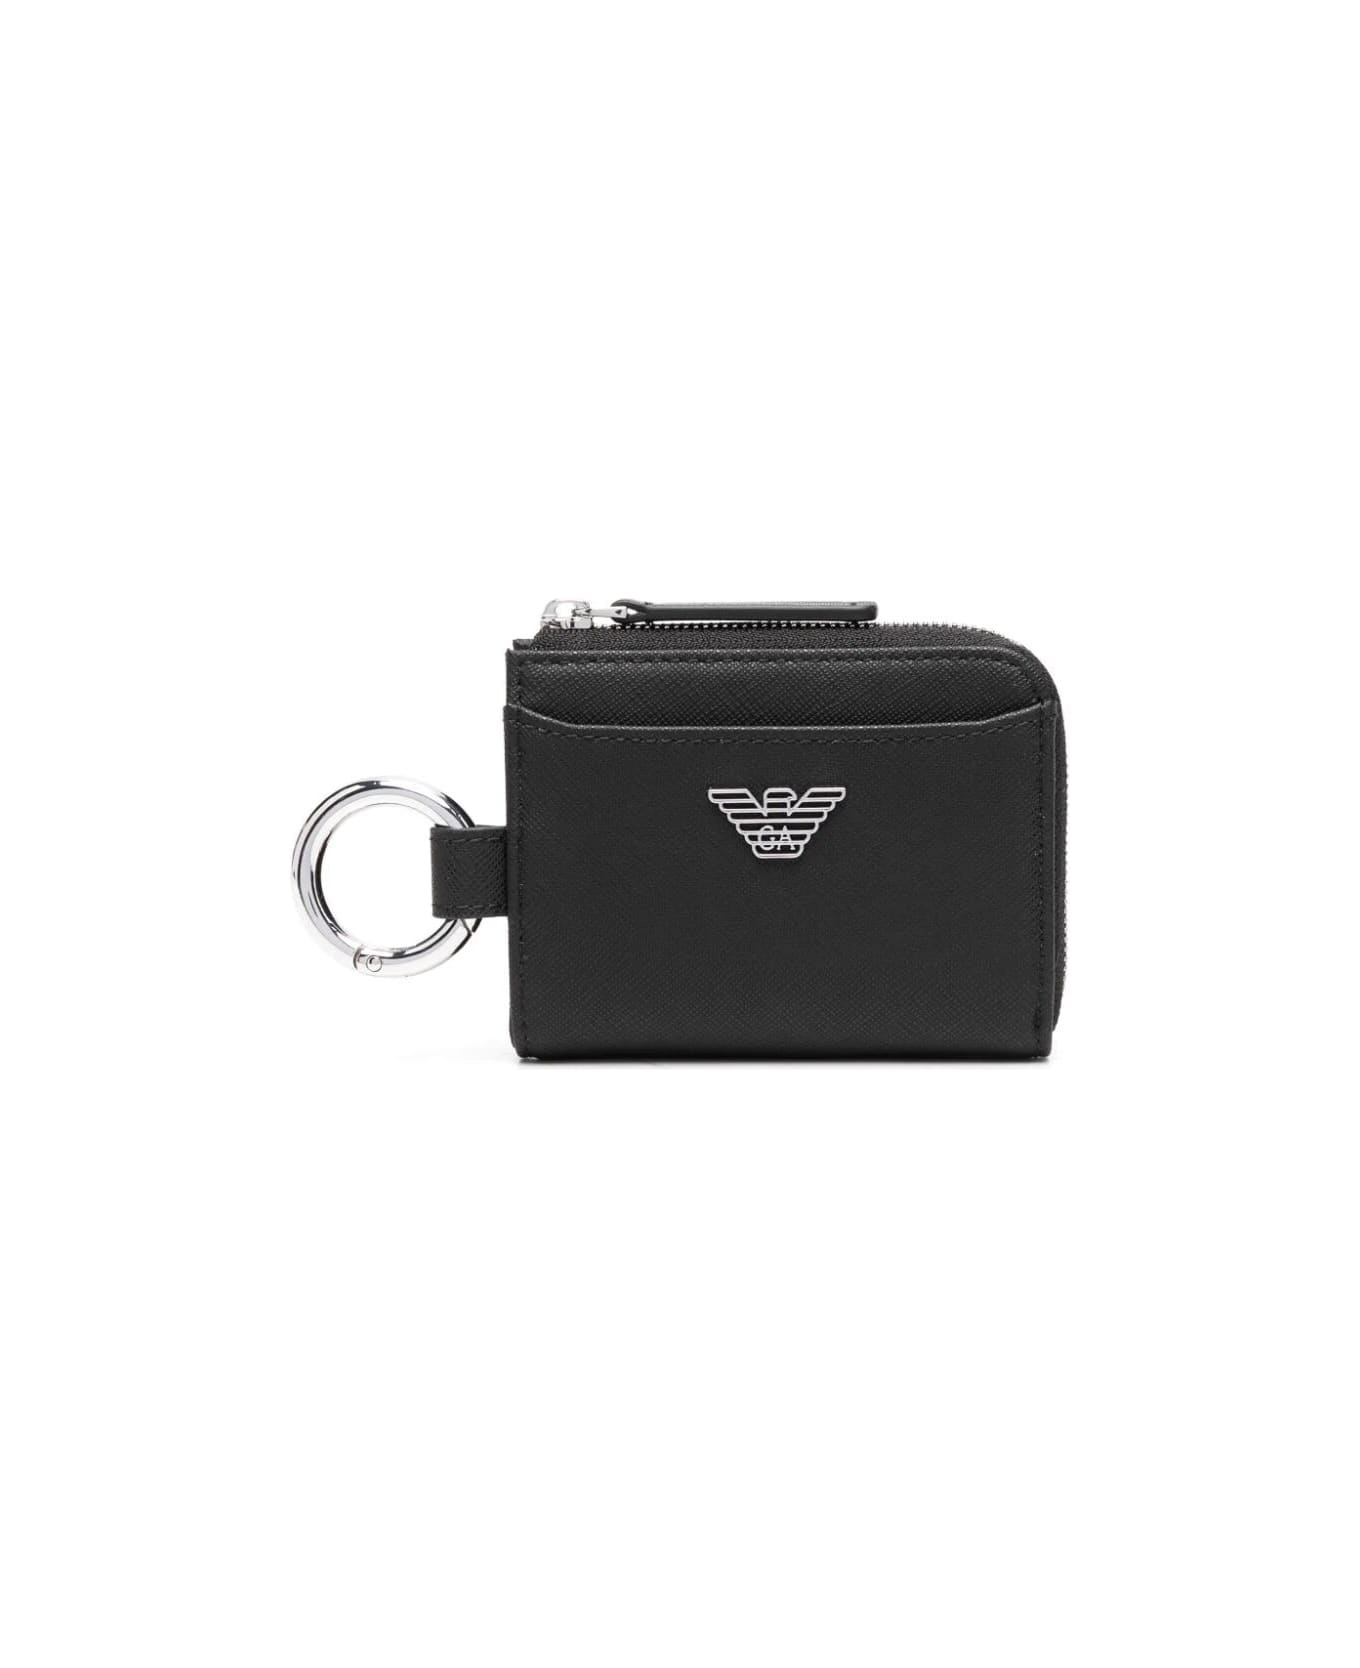 Emporio Armani Man`s Compact Wallet - Black